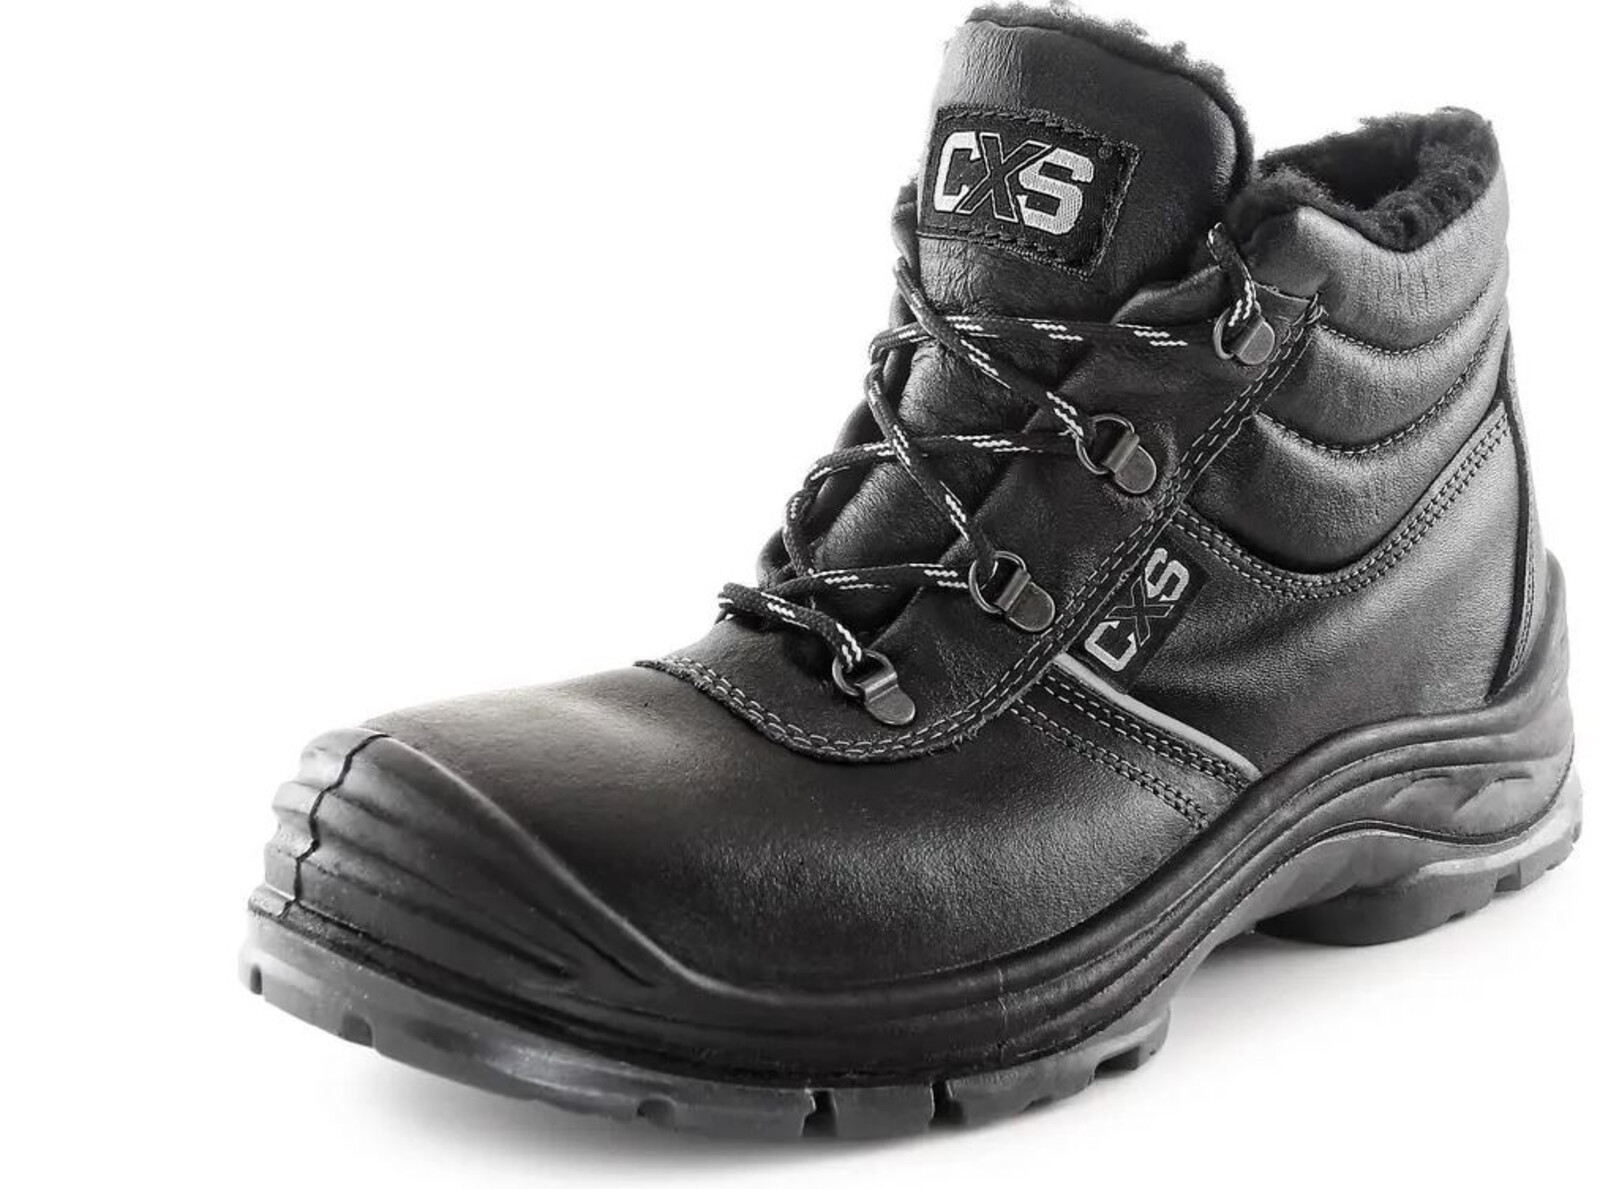 Zimná bezpečnostná členková obuv CXS Safety Steel Nickel S3 - veľkosť: 44, farba: čierna